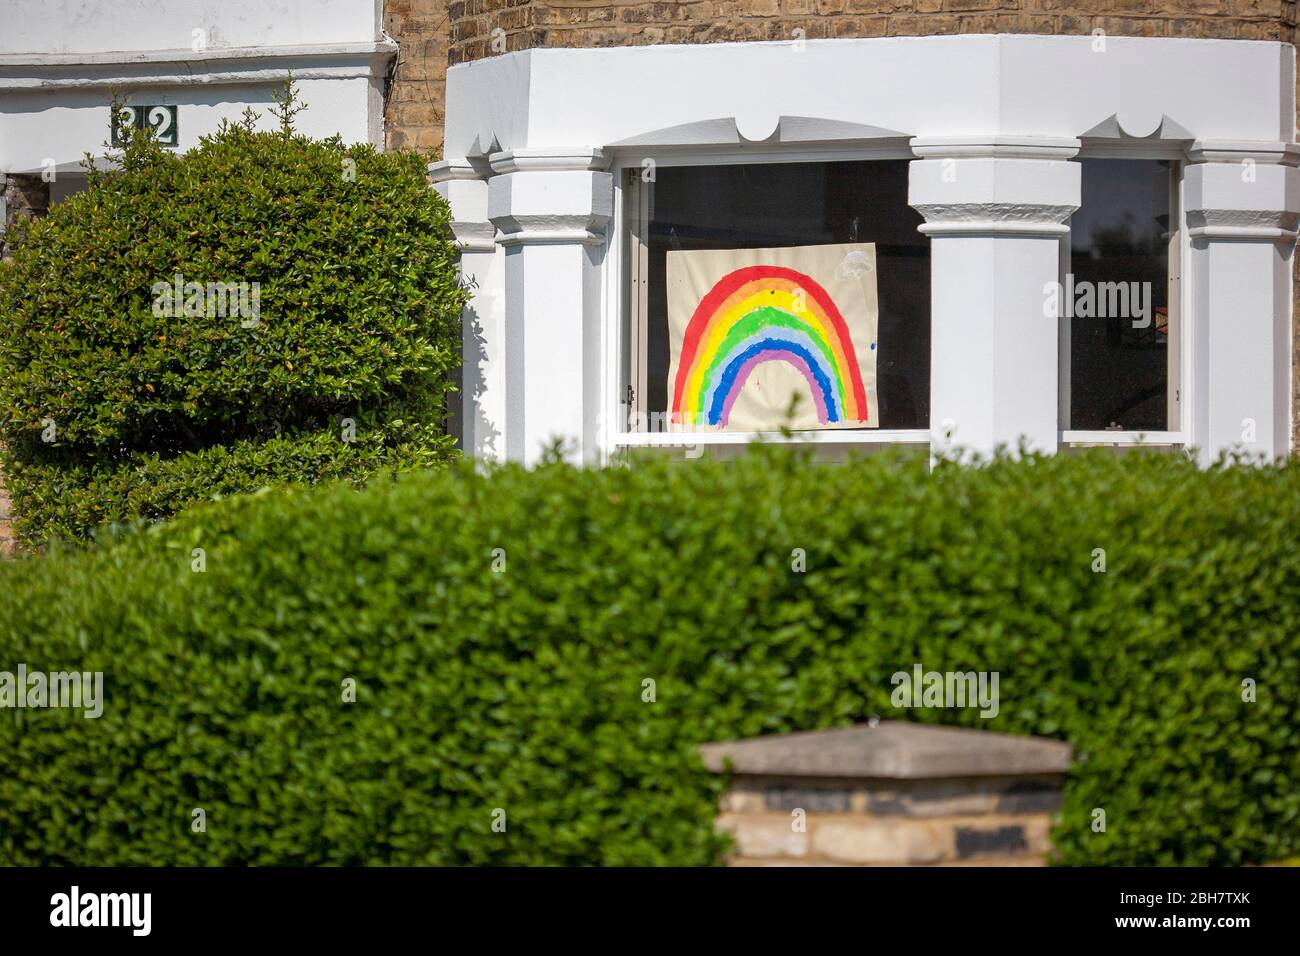 Pittura infantile arcobaleno, esposta nella finestra frontale di un immobile residenziale, durante la chiusura 2020 COVID-19. Streatham, Londra del Sud, Regno Unito Foto Stock